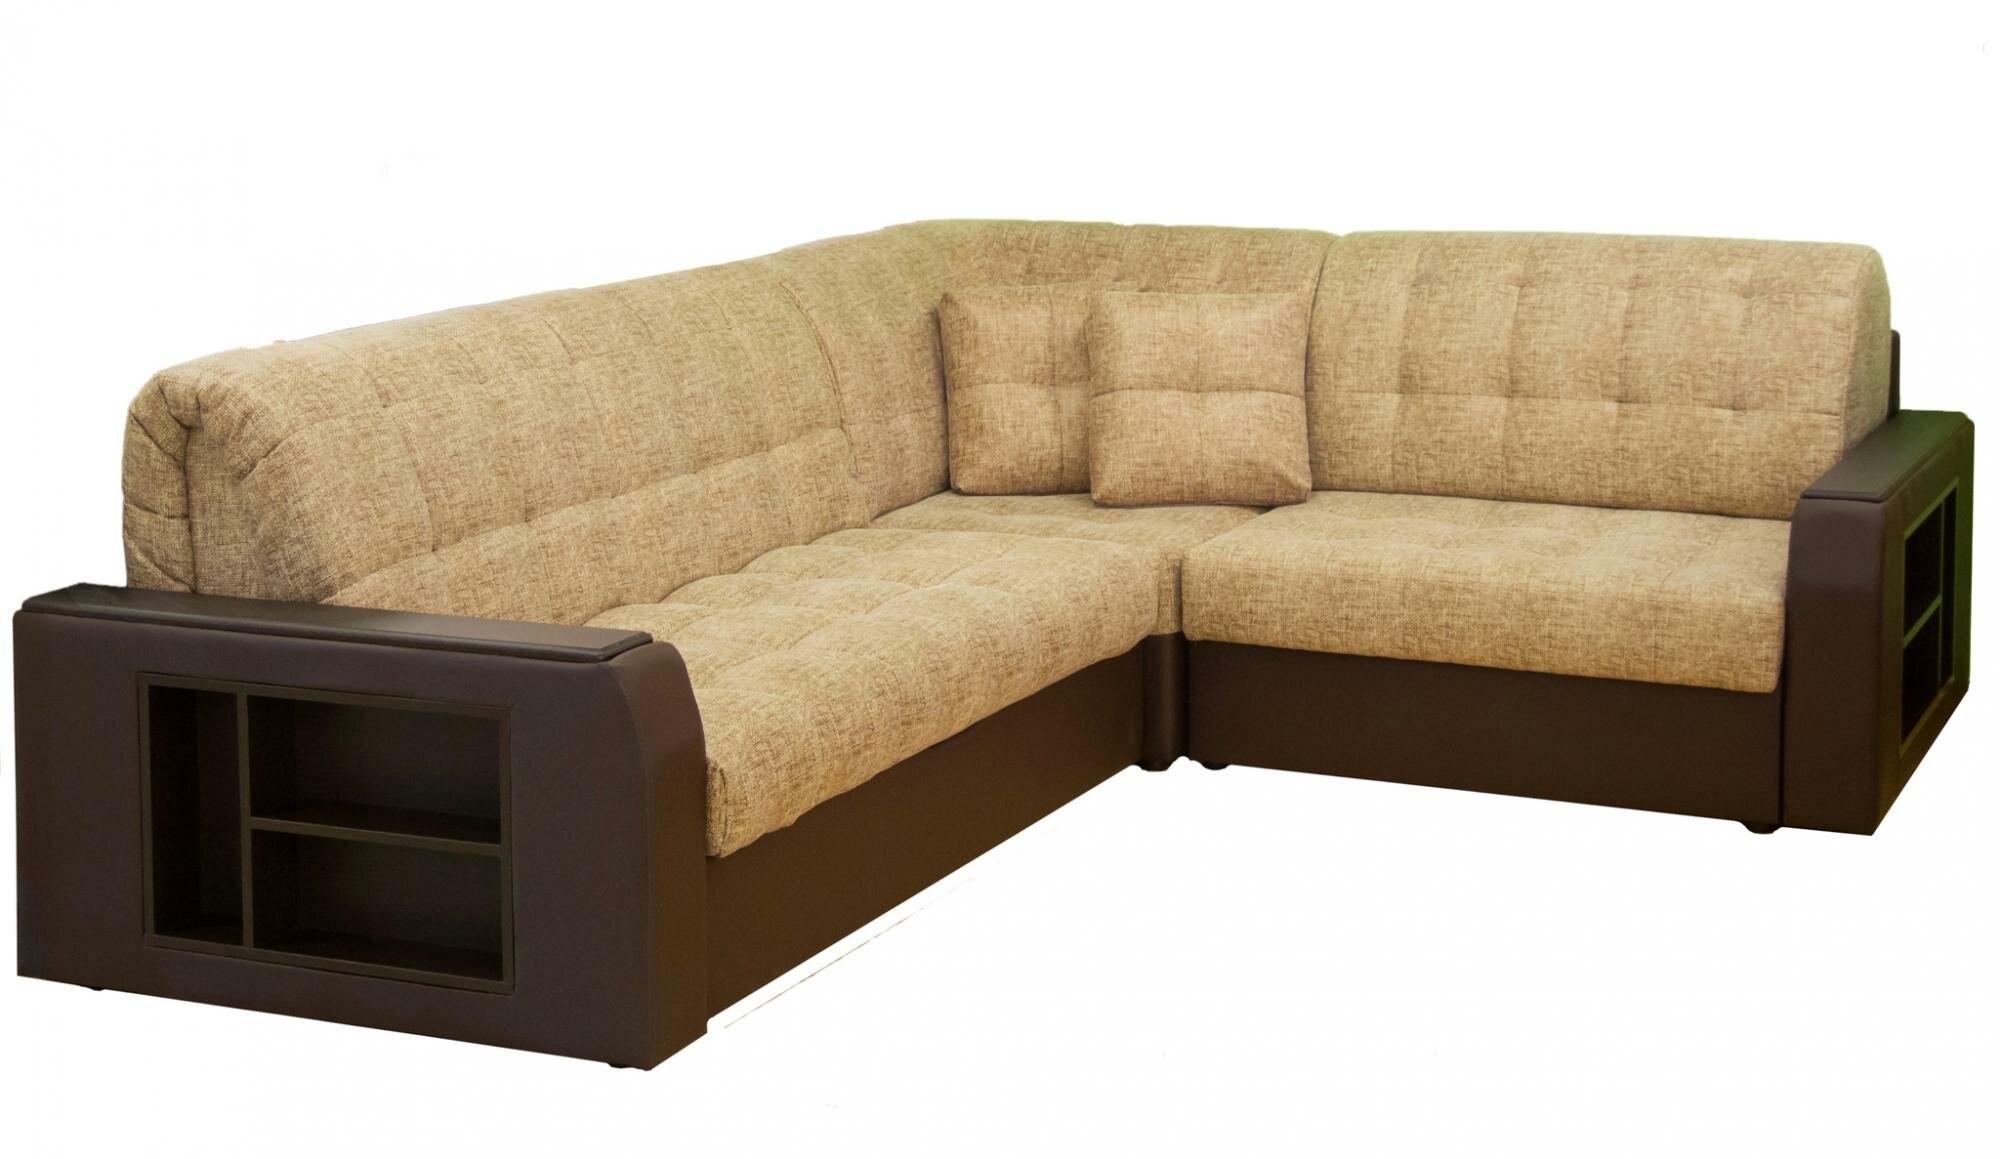 Купить угловой диван недорого от производителя распродажа. Фабрика мебелин диван меркурий2. Угловой диван с нишей.